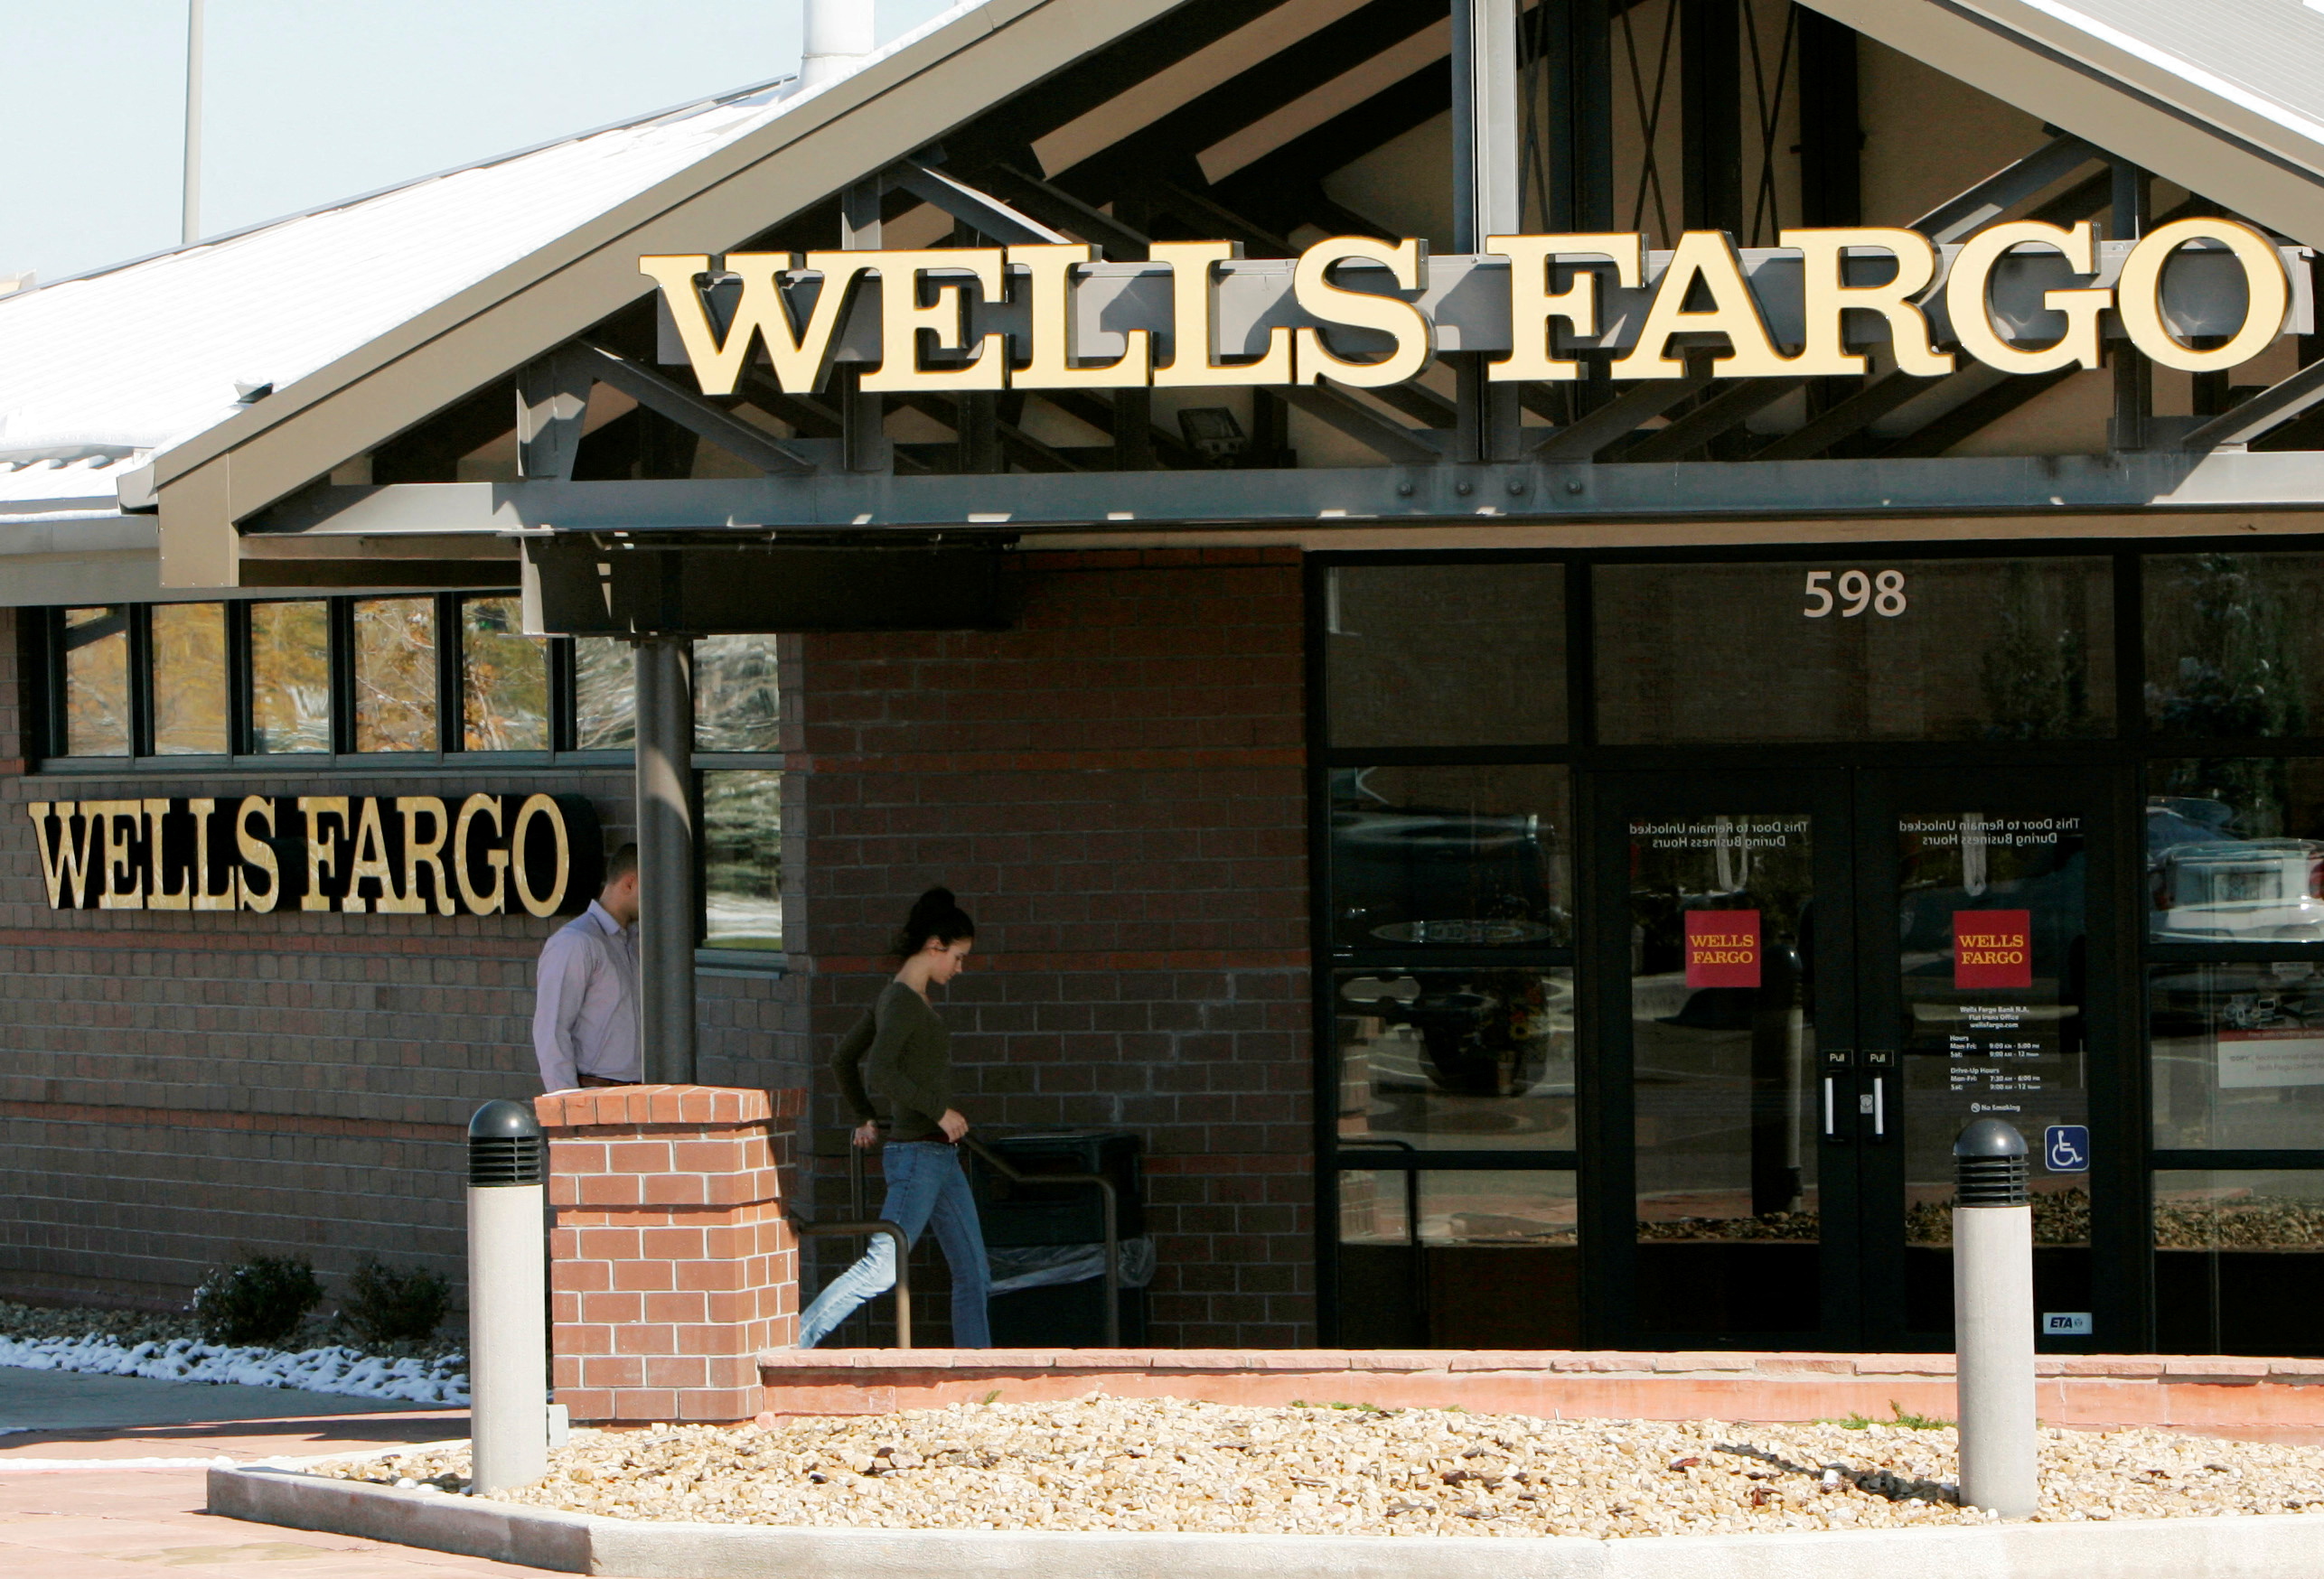 Customers walk into a Wells Fargo bank branch in suburban Denver, Colorado October 18, 2006. REUTERS/Rick Wilking